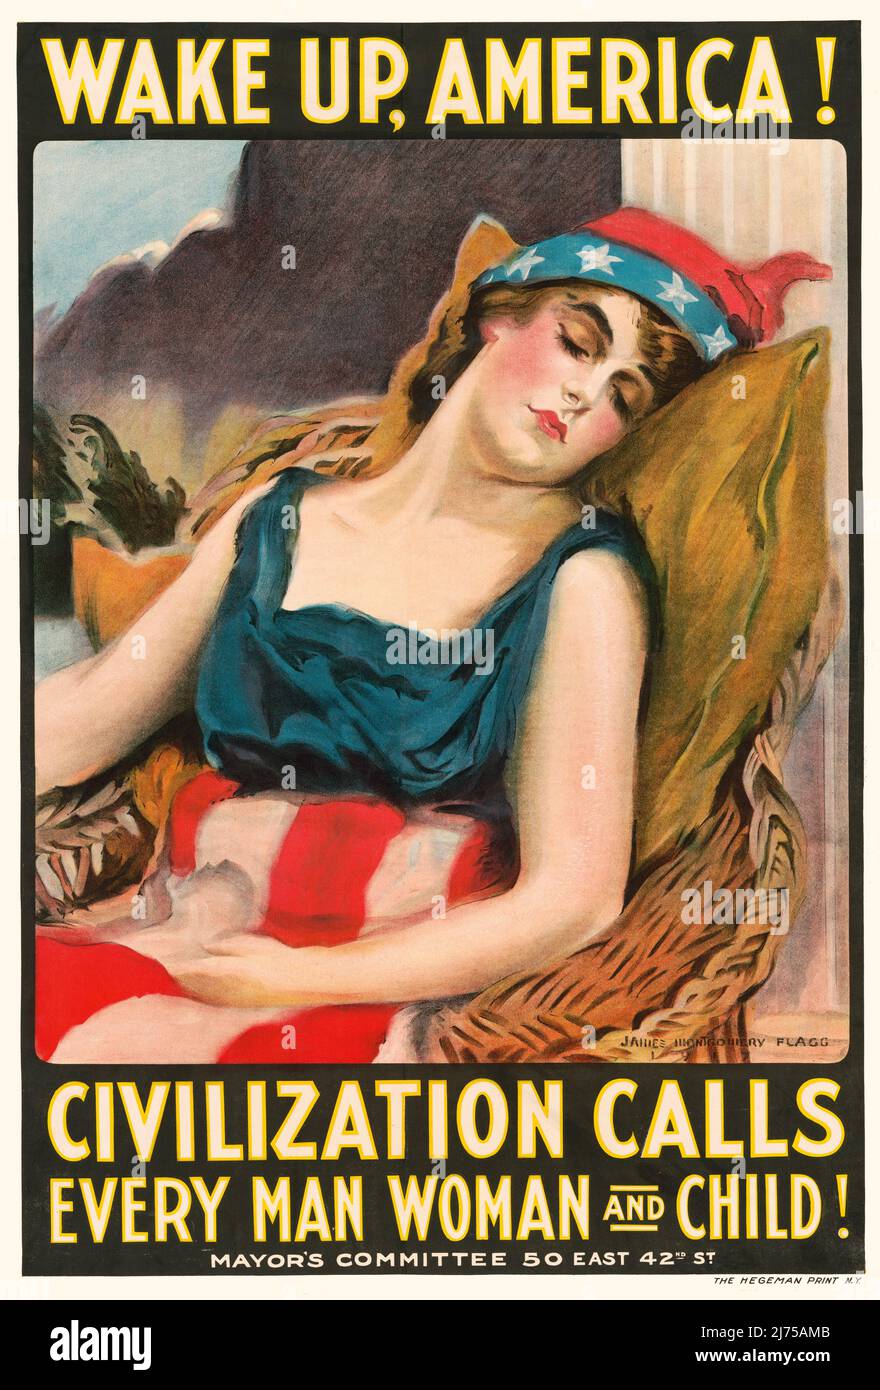 Ein amerikanisches Plakat aus dem ersten Weltkrieg aus dem frühen 20.. Jahrhundert, 1914-1918, das eine in Stars & Stripes gekleidete Frau zeigt, die Amerika beim Schlafen symbolisiert. Der Künstler ist James Montgomery Flagg. (1877-1960) Stockfoto